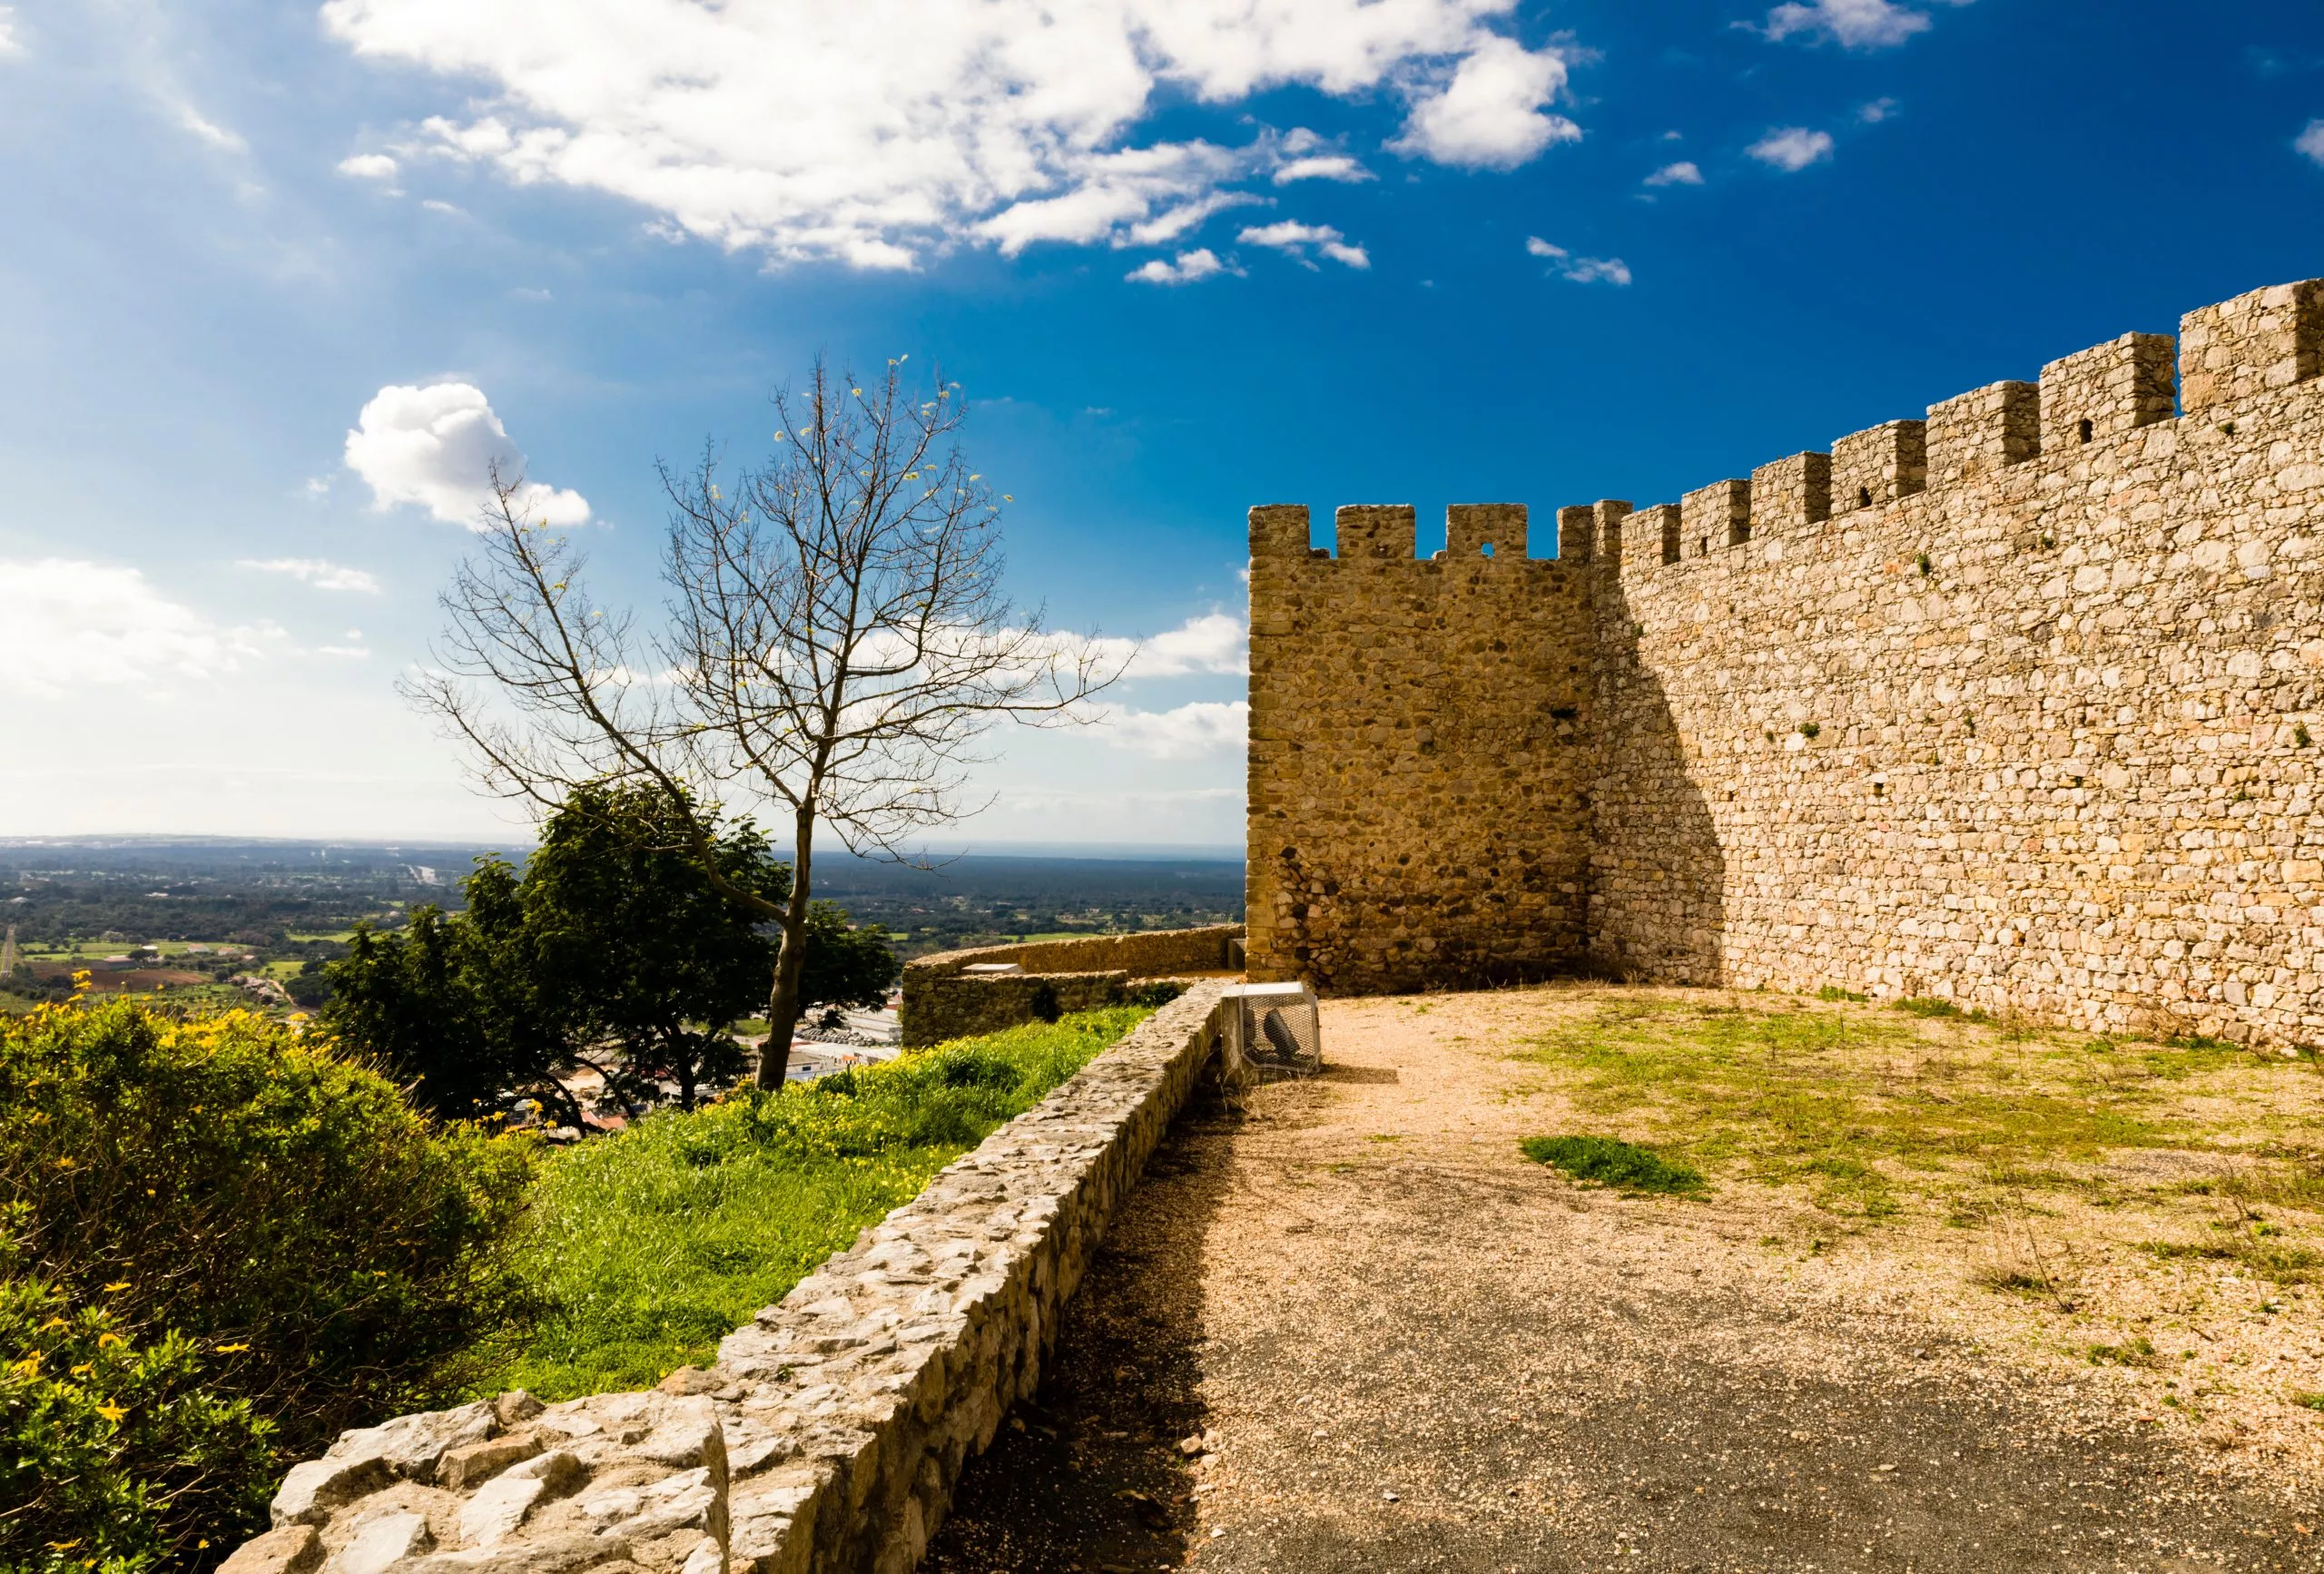 Pormenor do Castelo de Santiago do Cacém e vista para o oceano atlântico, litoral alentejano.